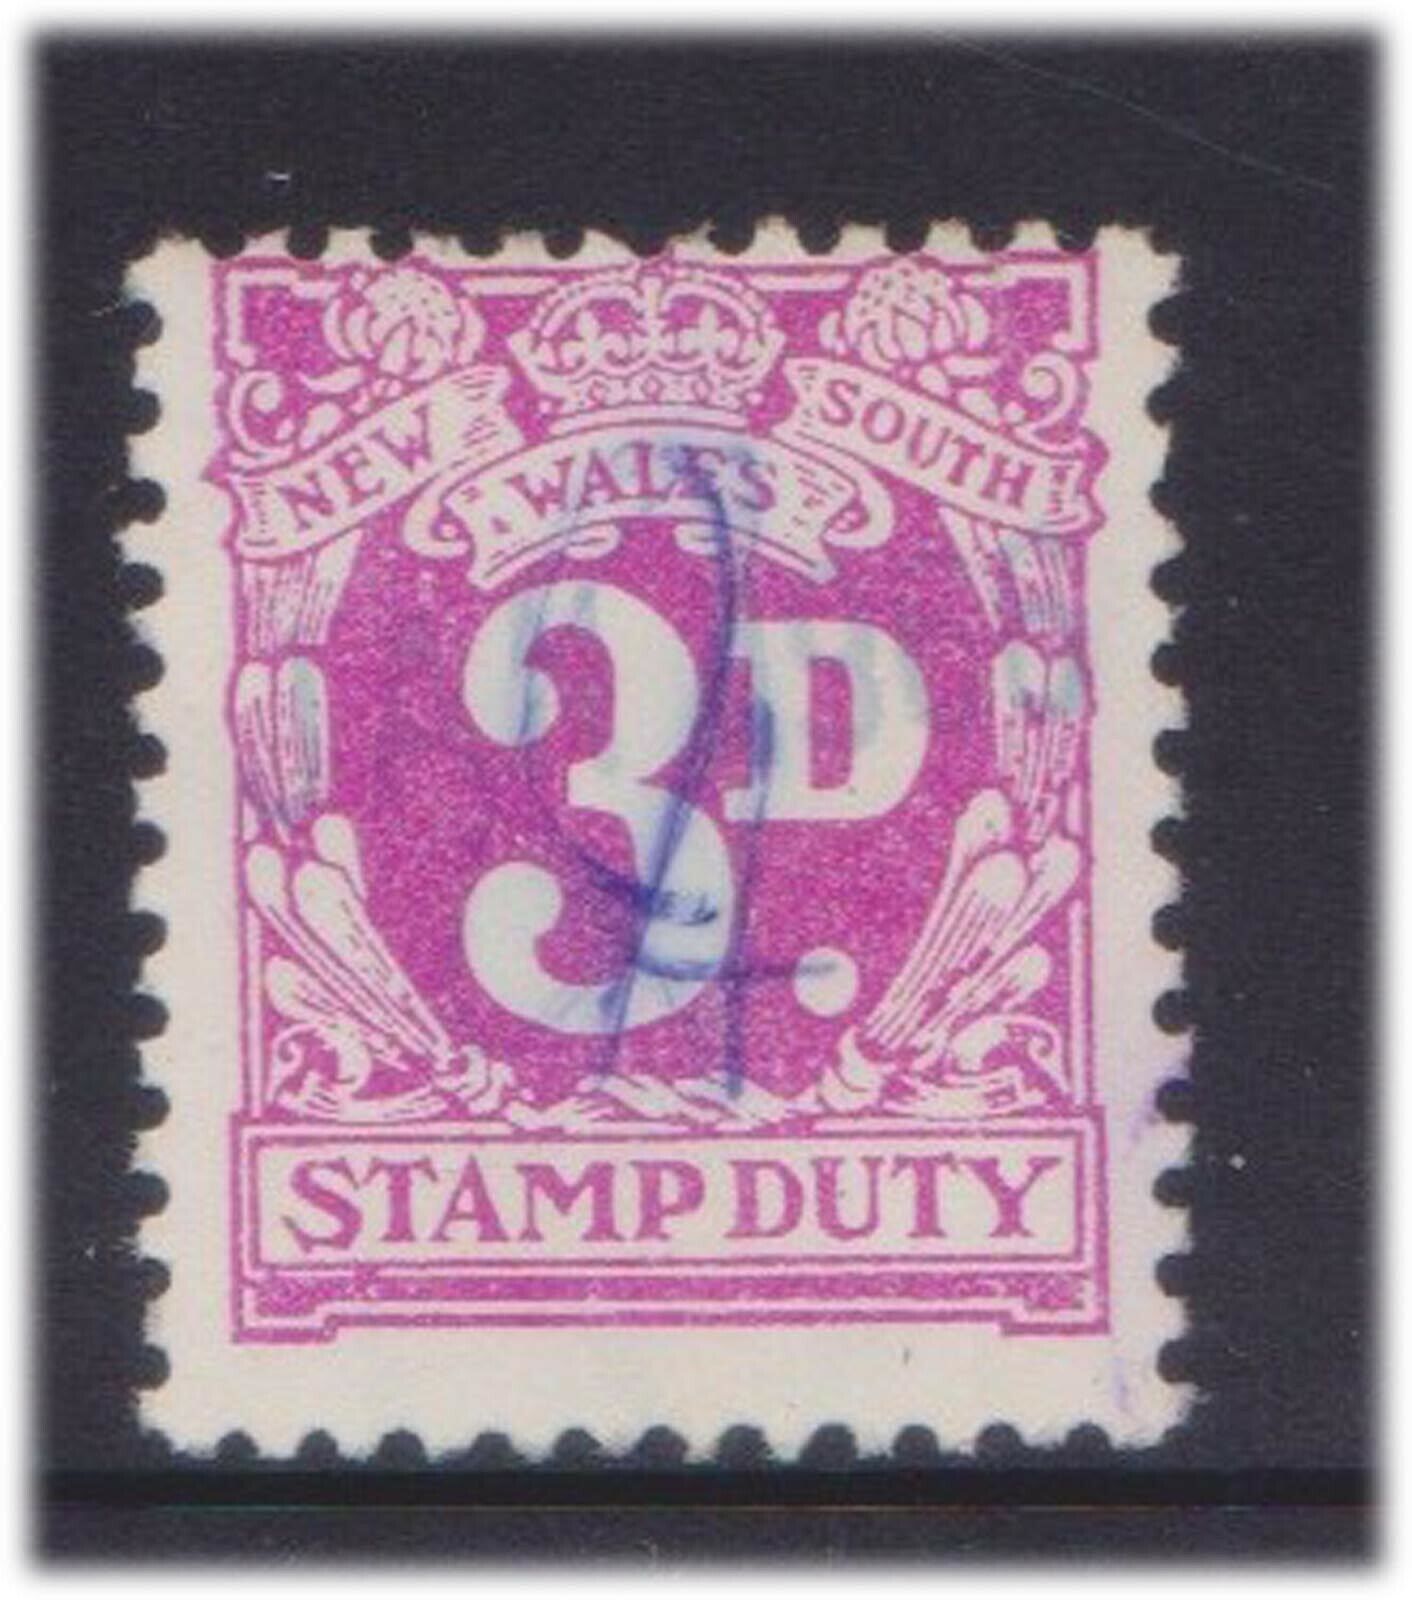 F98-142 1950 NSW 3d Max 77% OFF stamp duty violet EQ Regular dealer